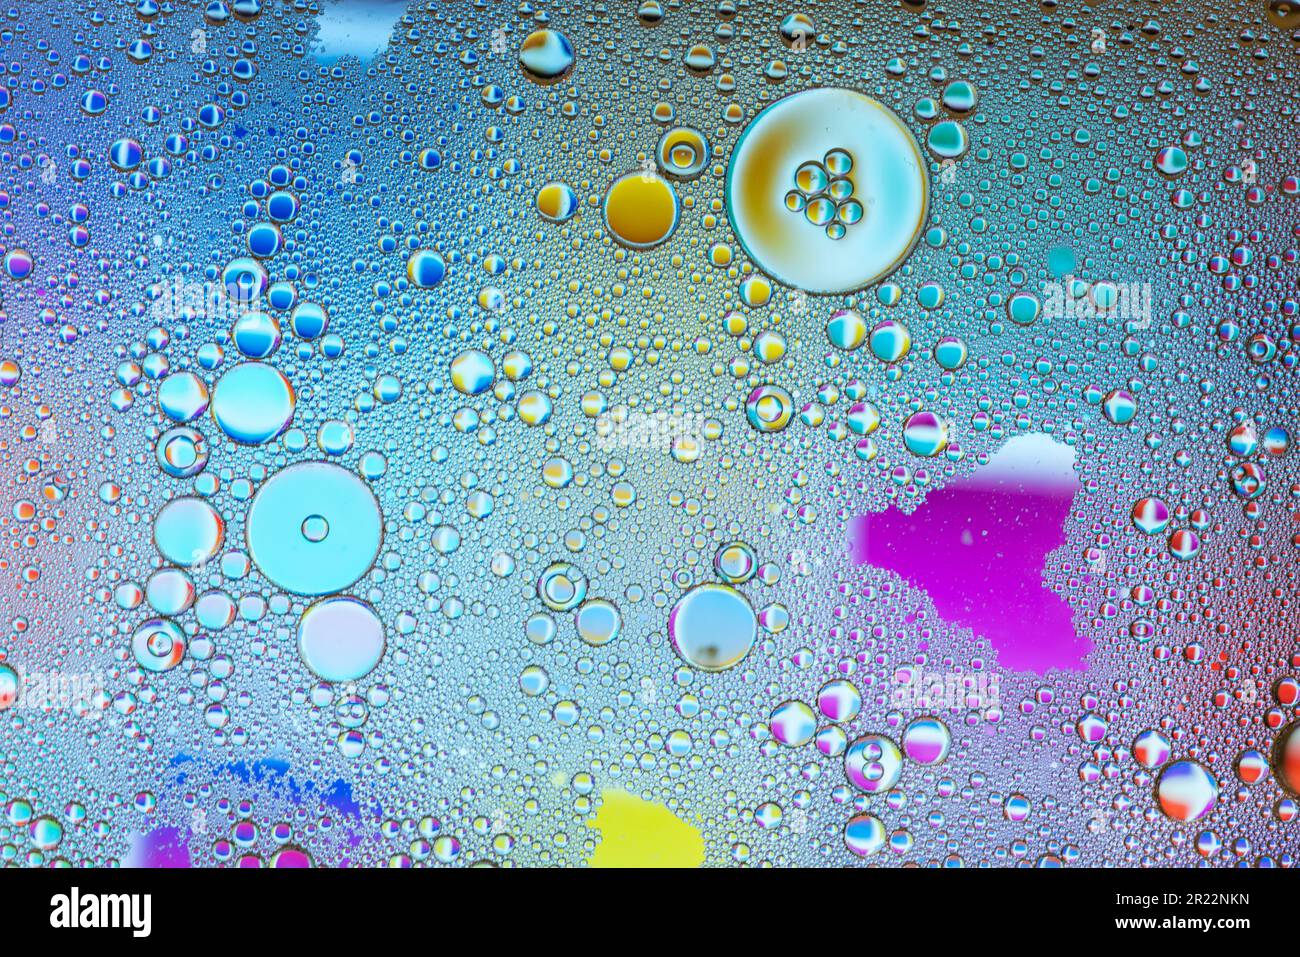 Detalle de burbujas y gotas de agua de varios colores Foto Stock